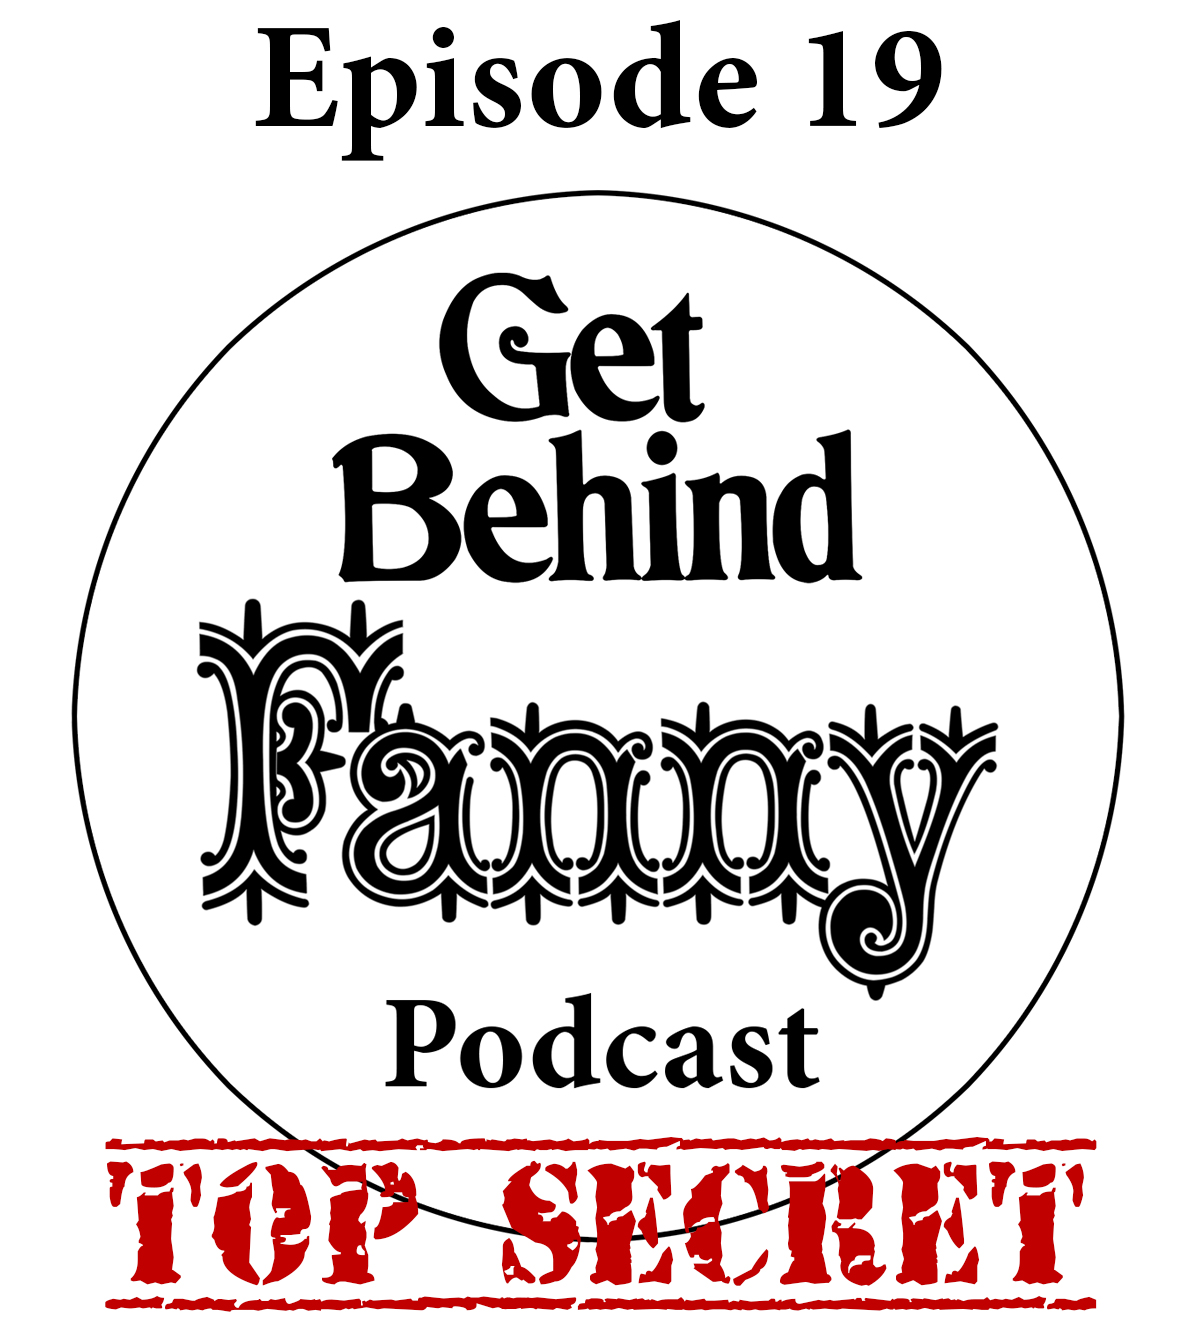 Get Behind Fanny: Episode 19